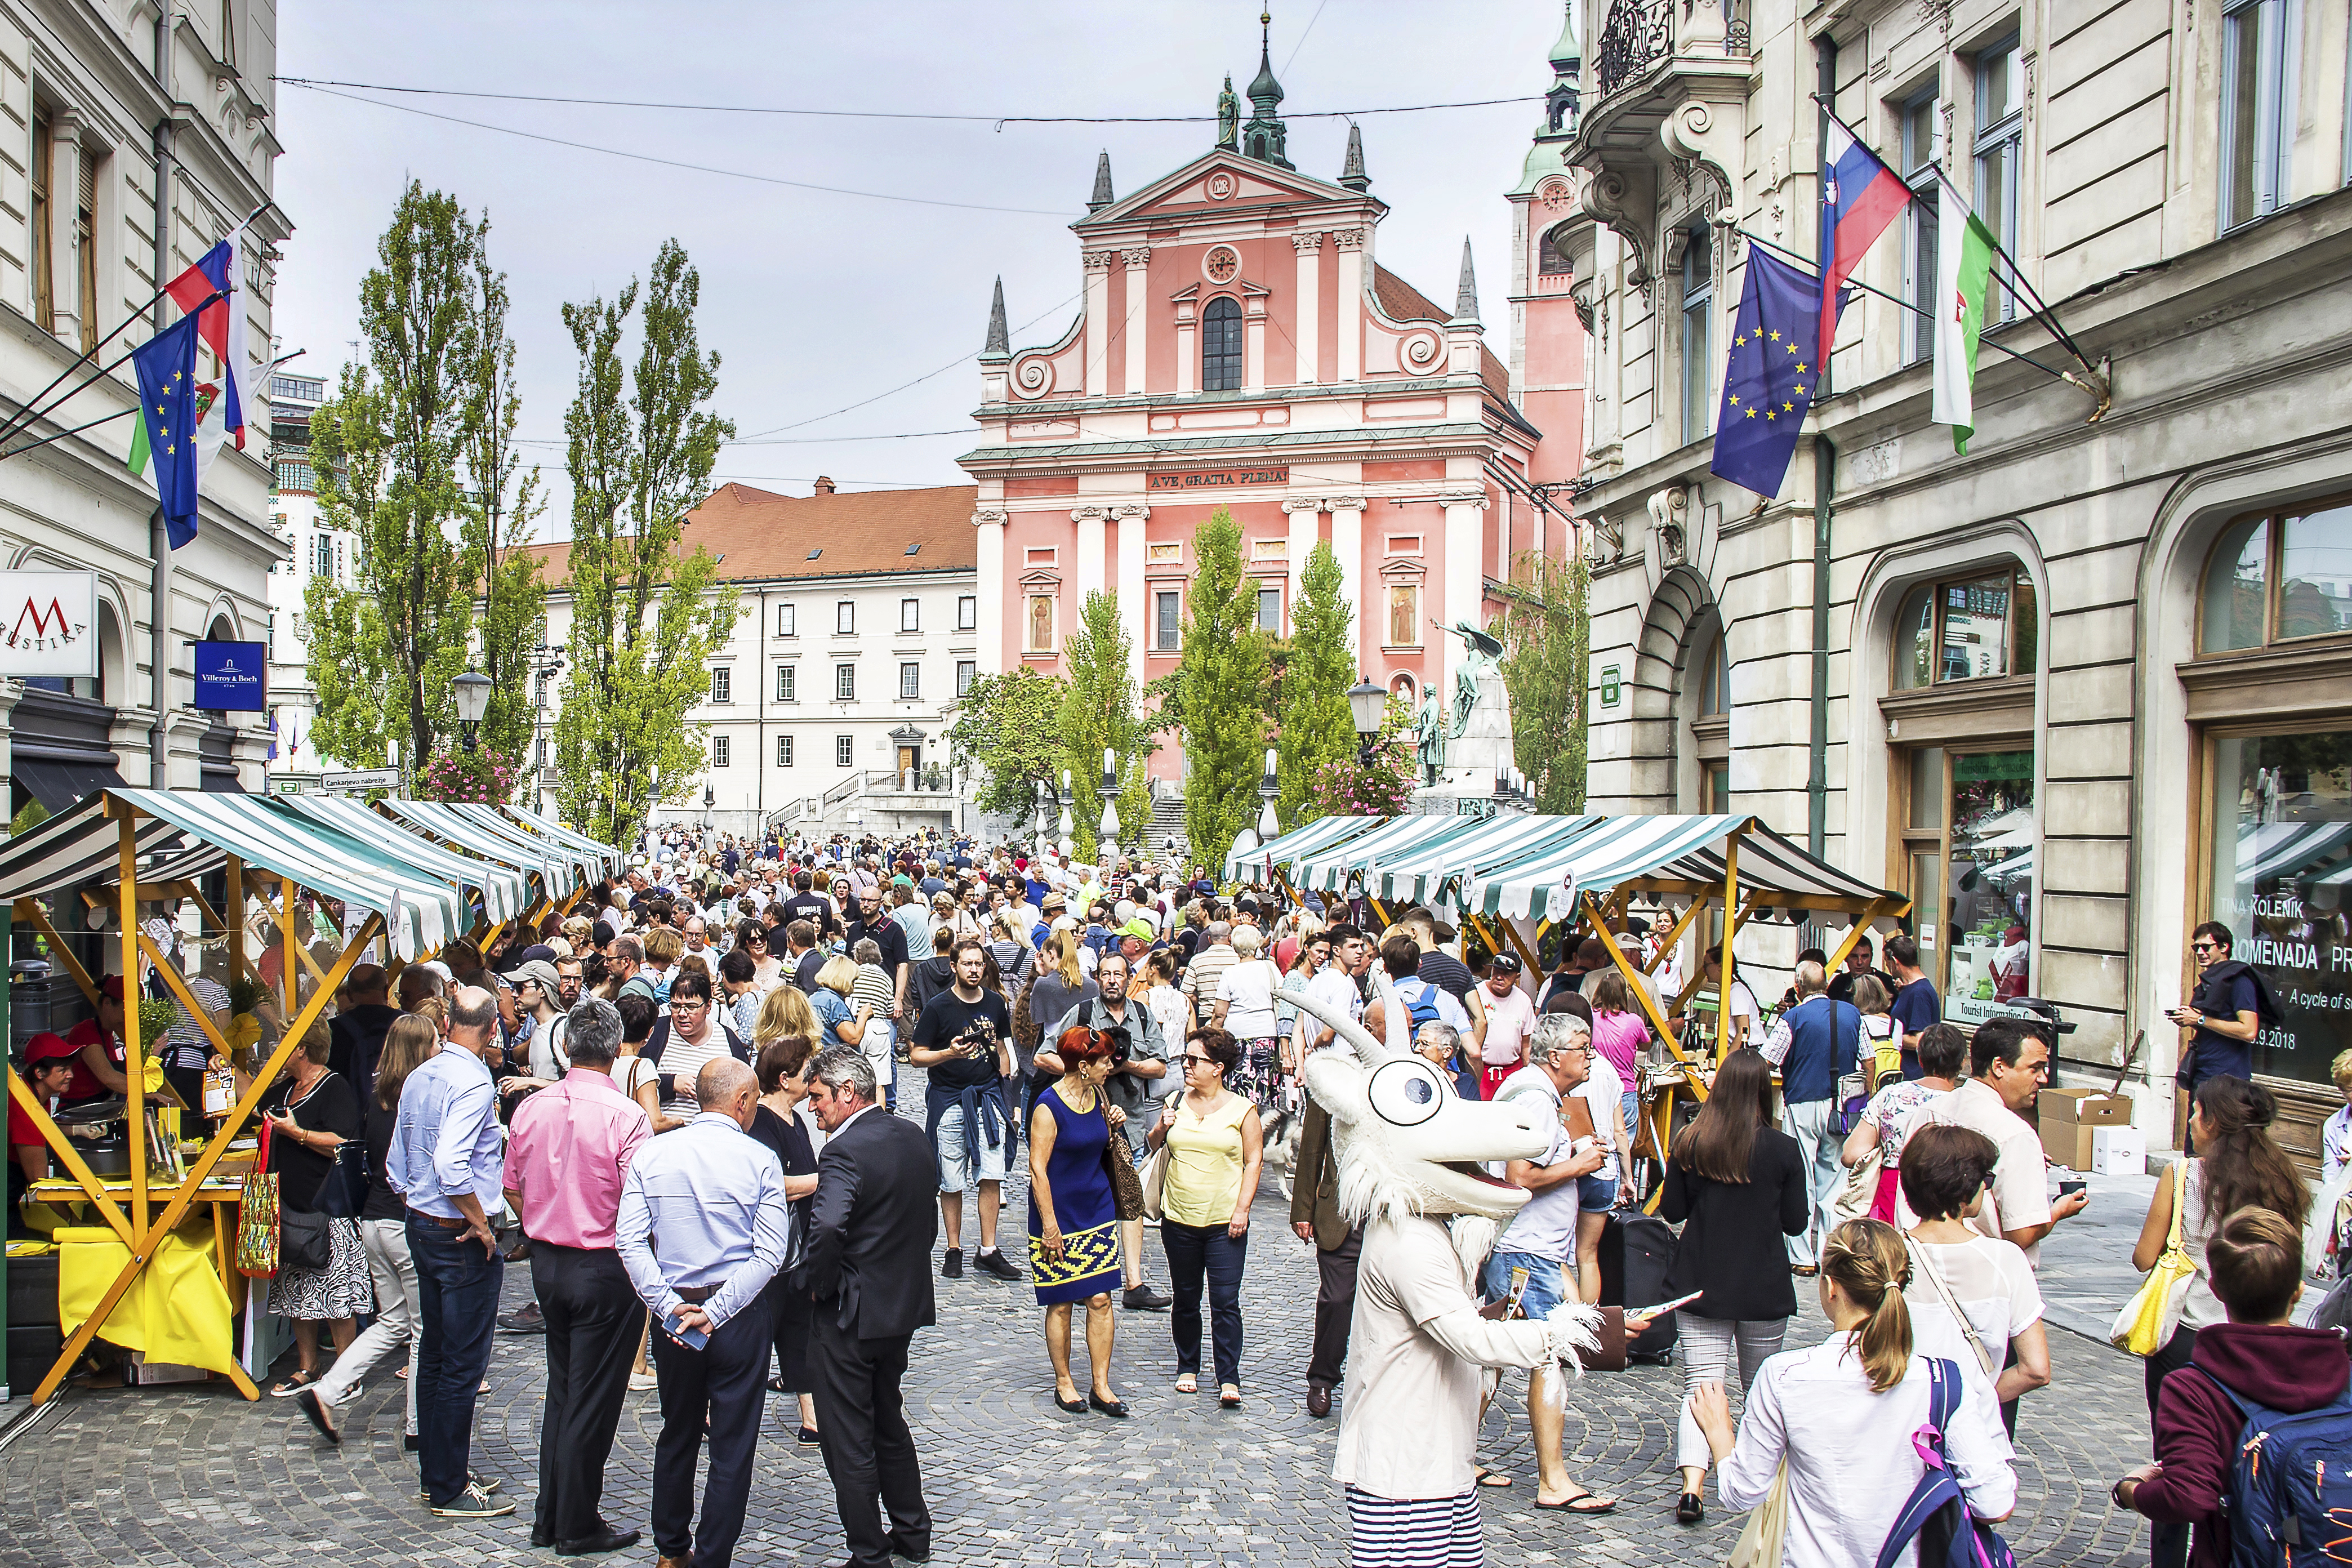 PO PRIMORSKO – kulinarično doživetje v središču slovenske prestolnice